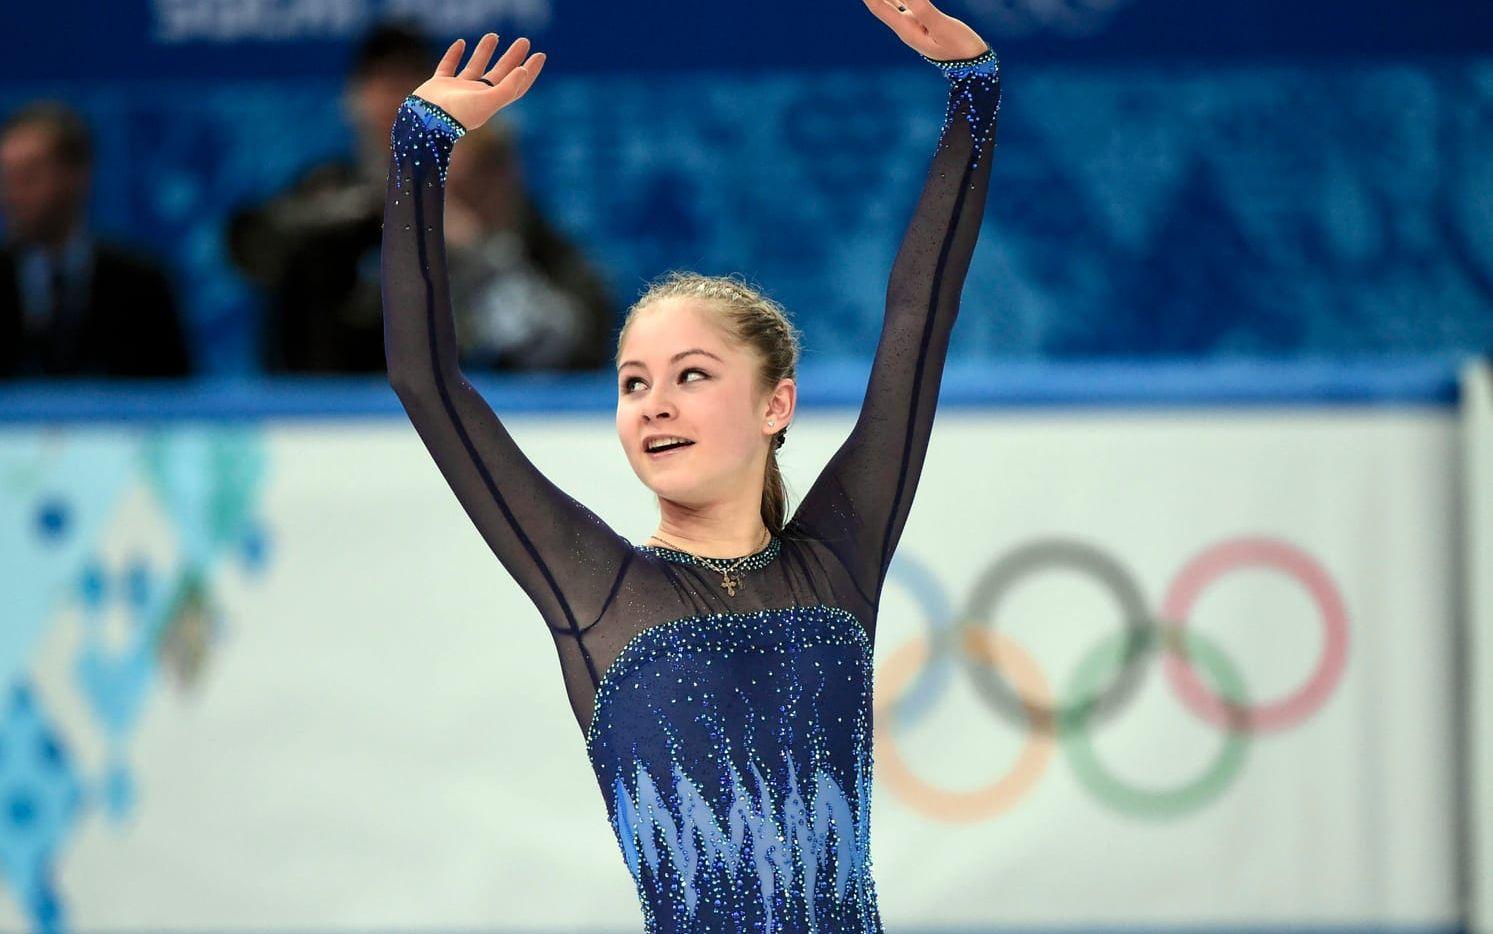 OS-guldmedaljören Julia Lipnitskaja slutar som 19-åring då hon lider av anorexi: "Jag vill tacka alla fans för deras kärlek". Bild: TT